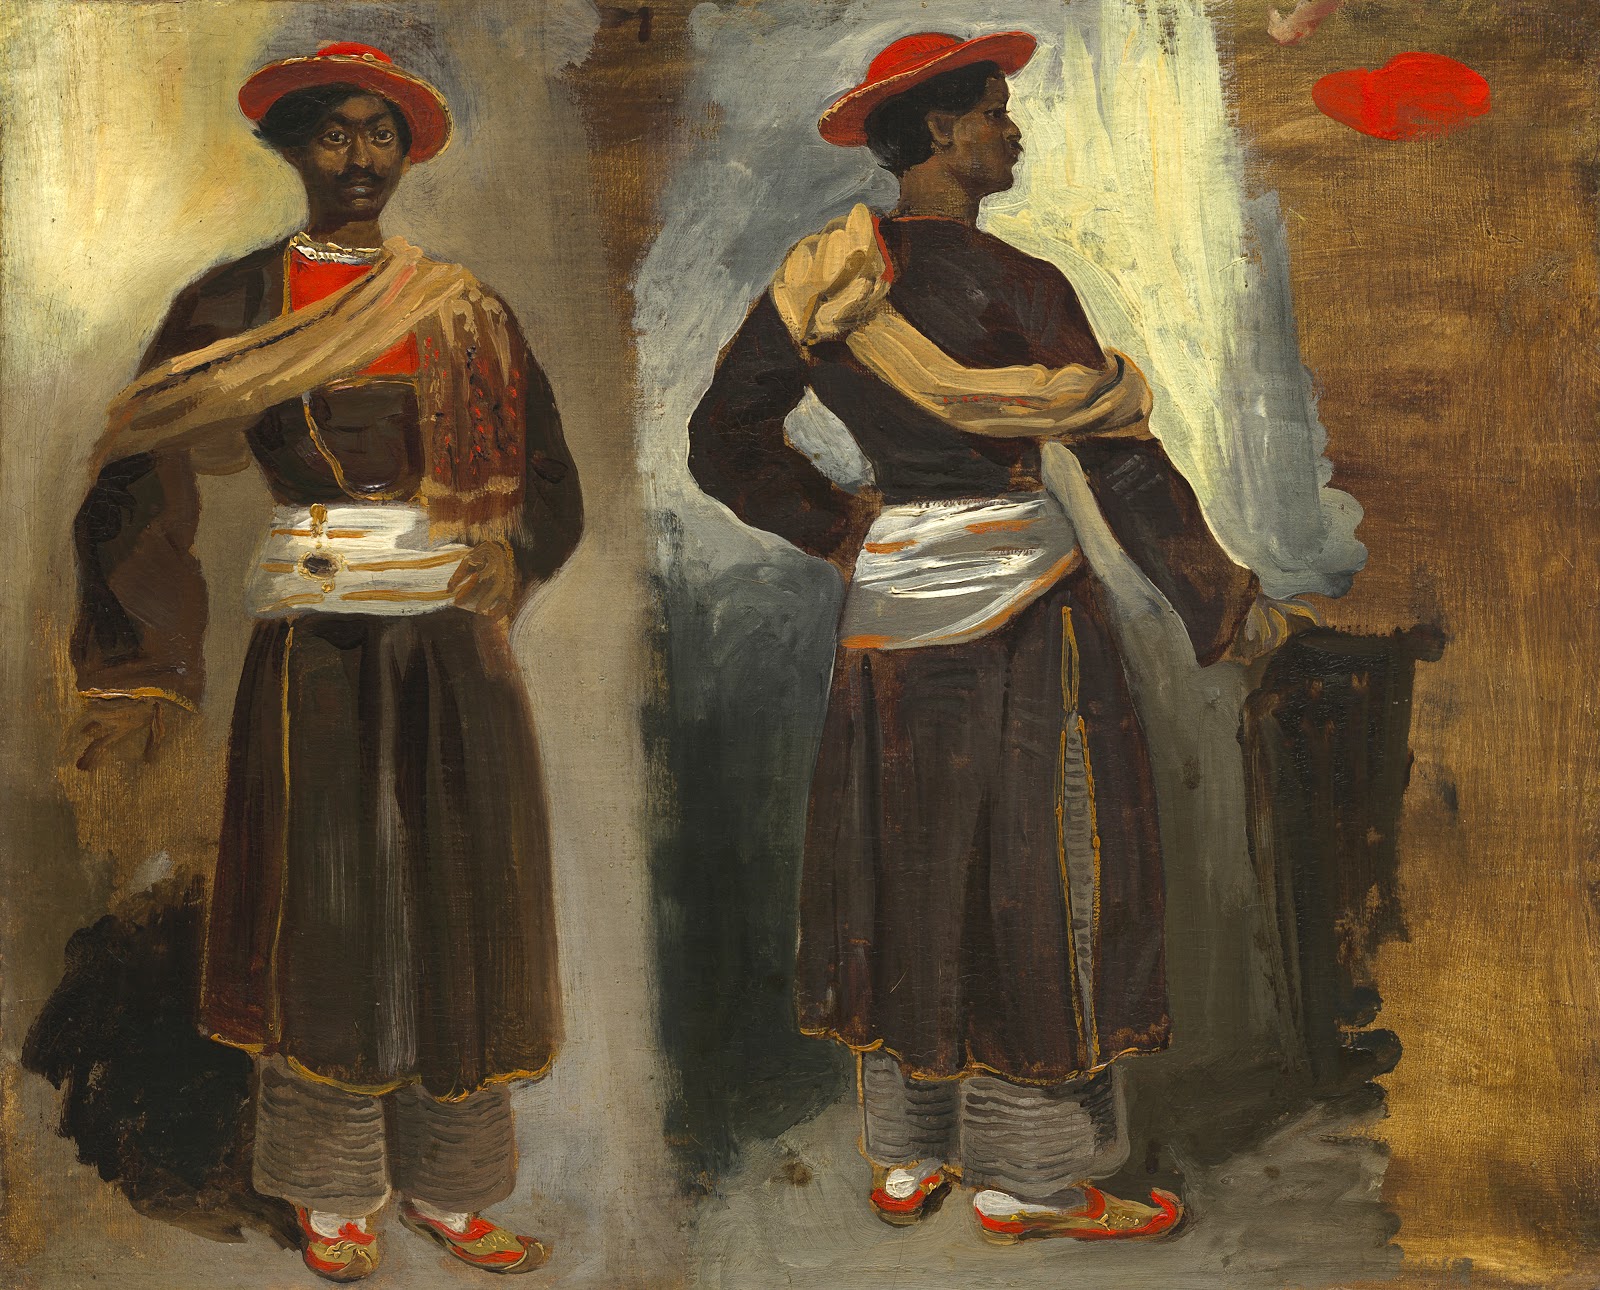 Eugene+Delacroix-1798-1863 (292).jpg